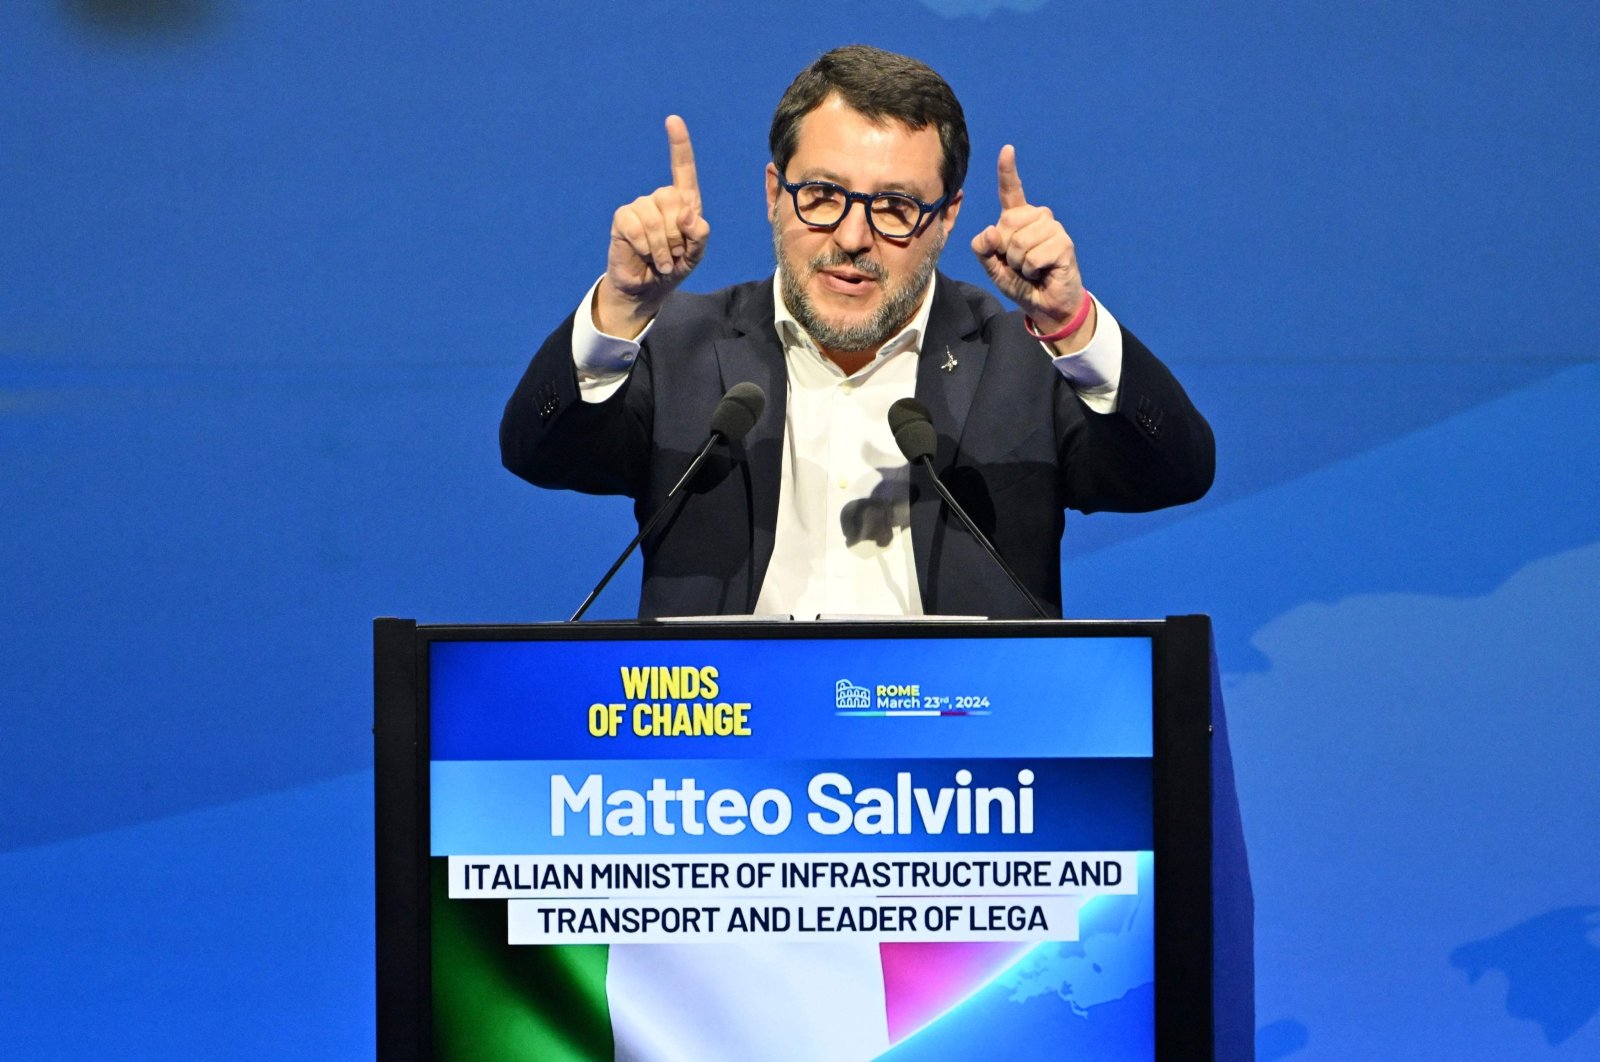 Le président français Macron est un danger pour l'Europe, selon le vice-Premier ministre italien Salvini